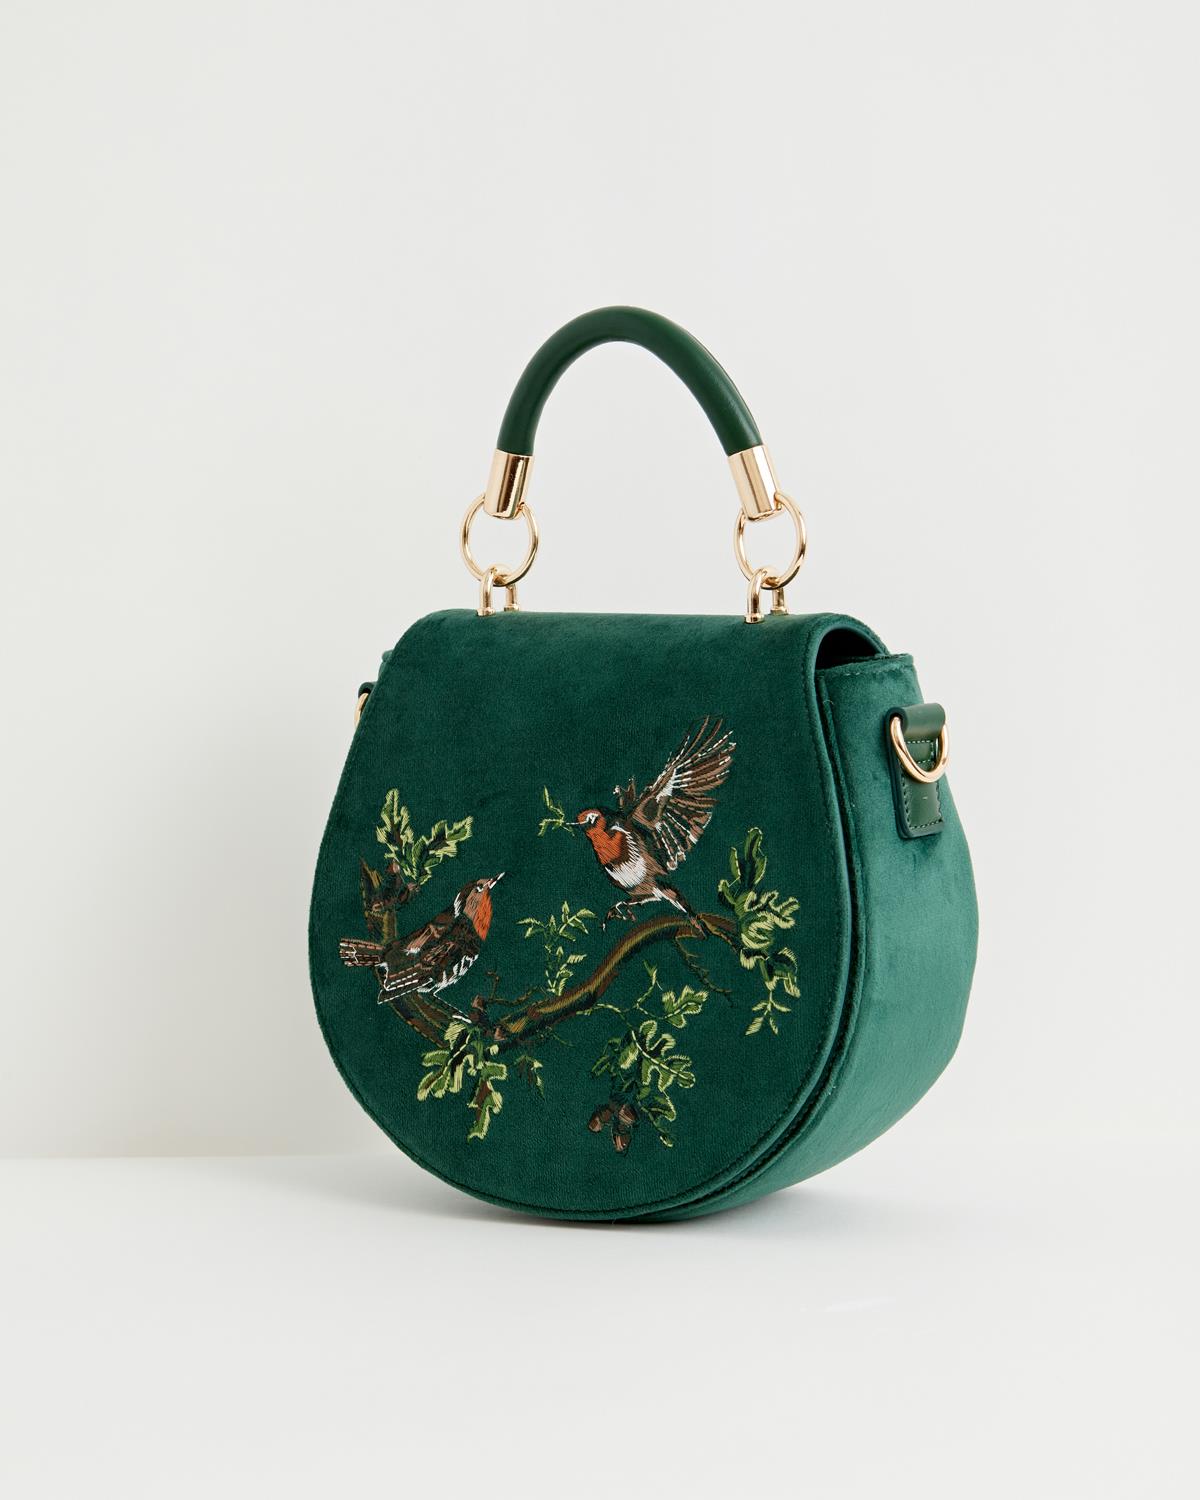 Fable Robin Love Embroidered Saddle Bag Fern Green Velvet